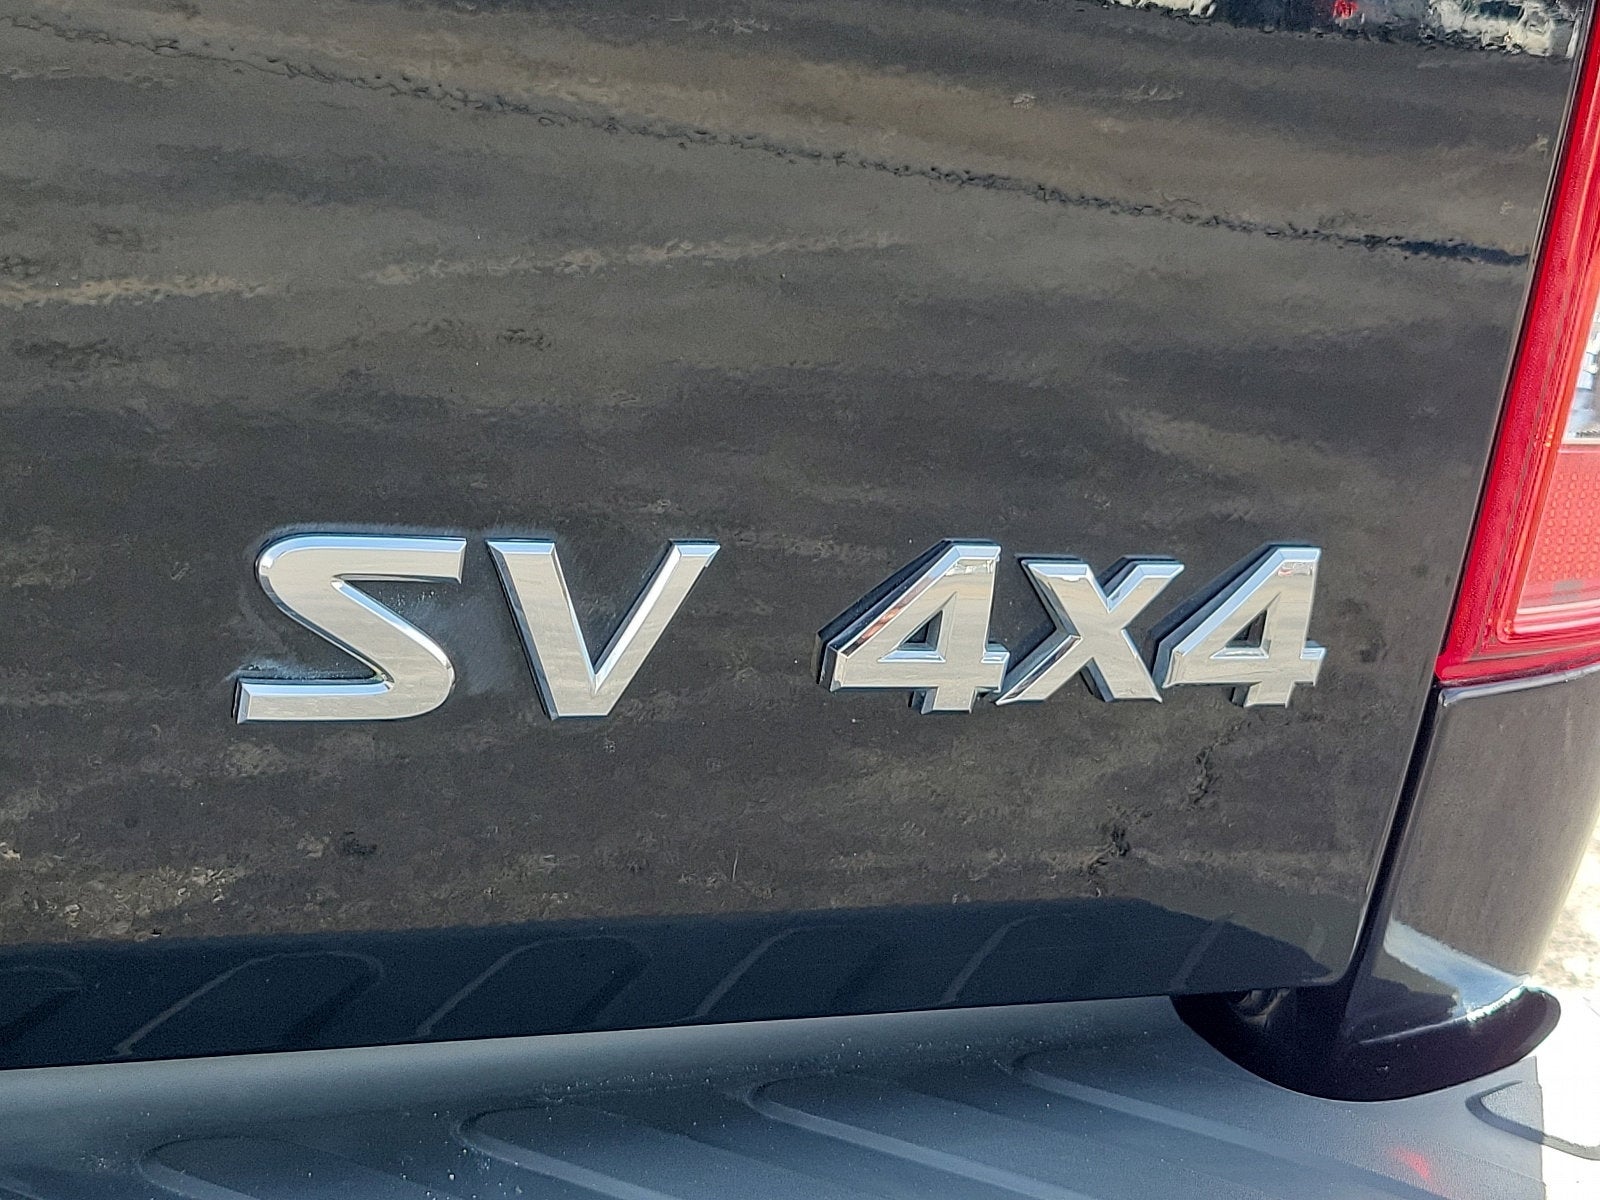 2019 Nissan Frontier SV